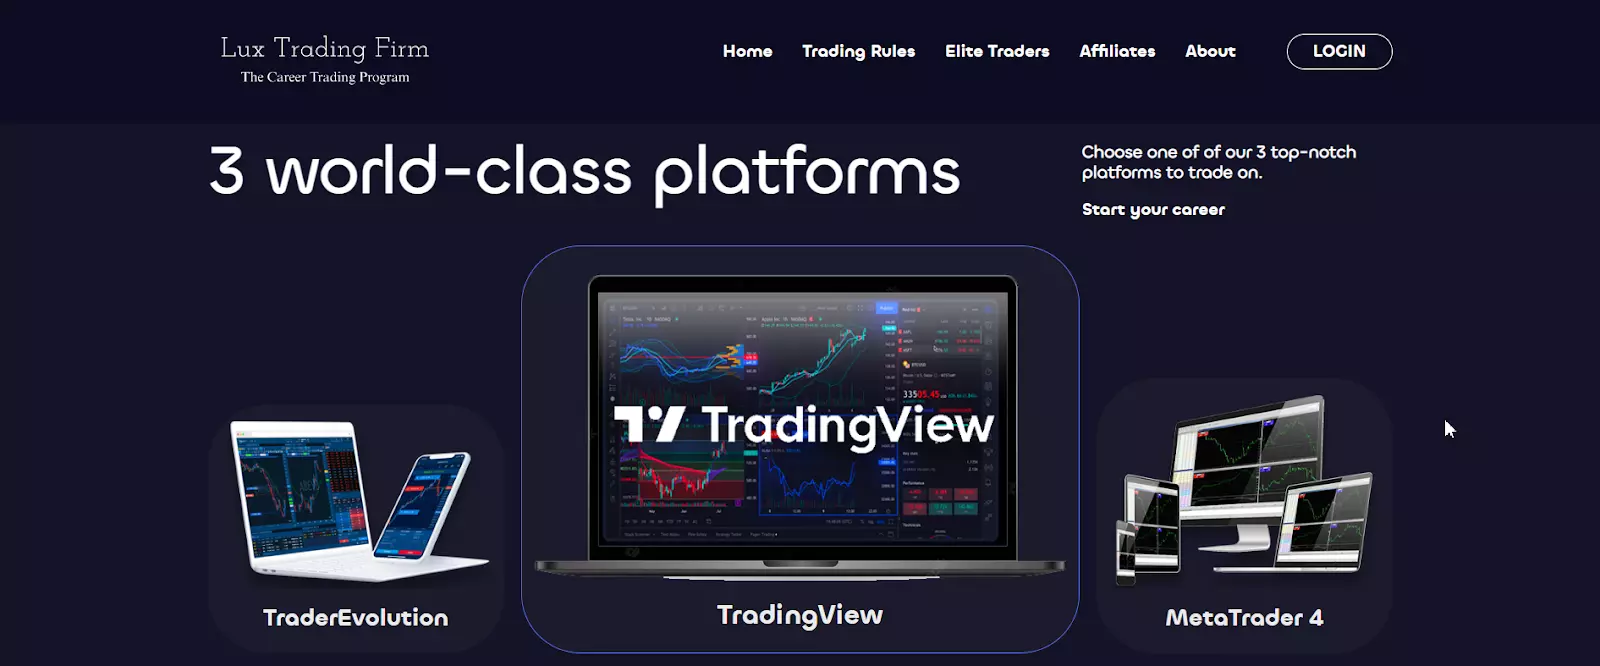 Przegląd Lux Trading Firm - Wybierz platformę transakcyjną